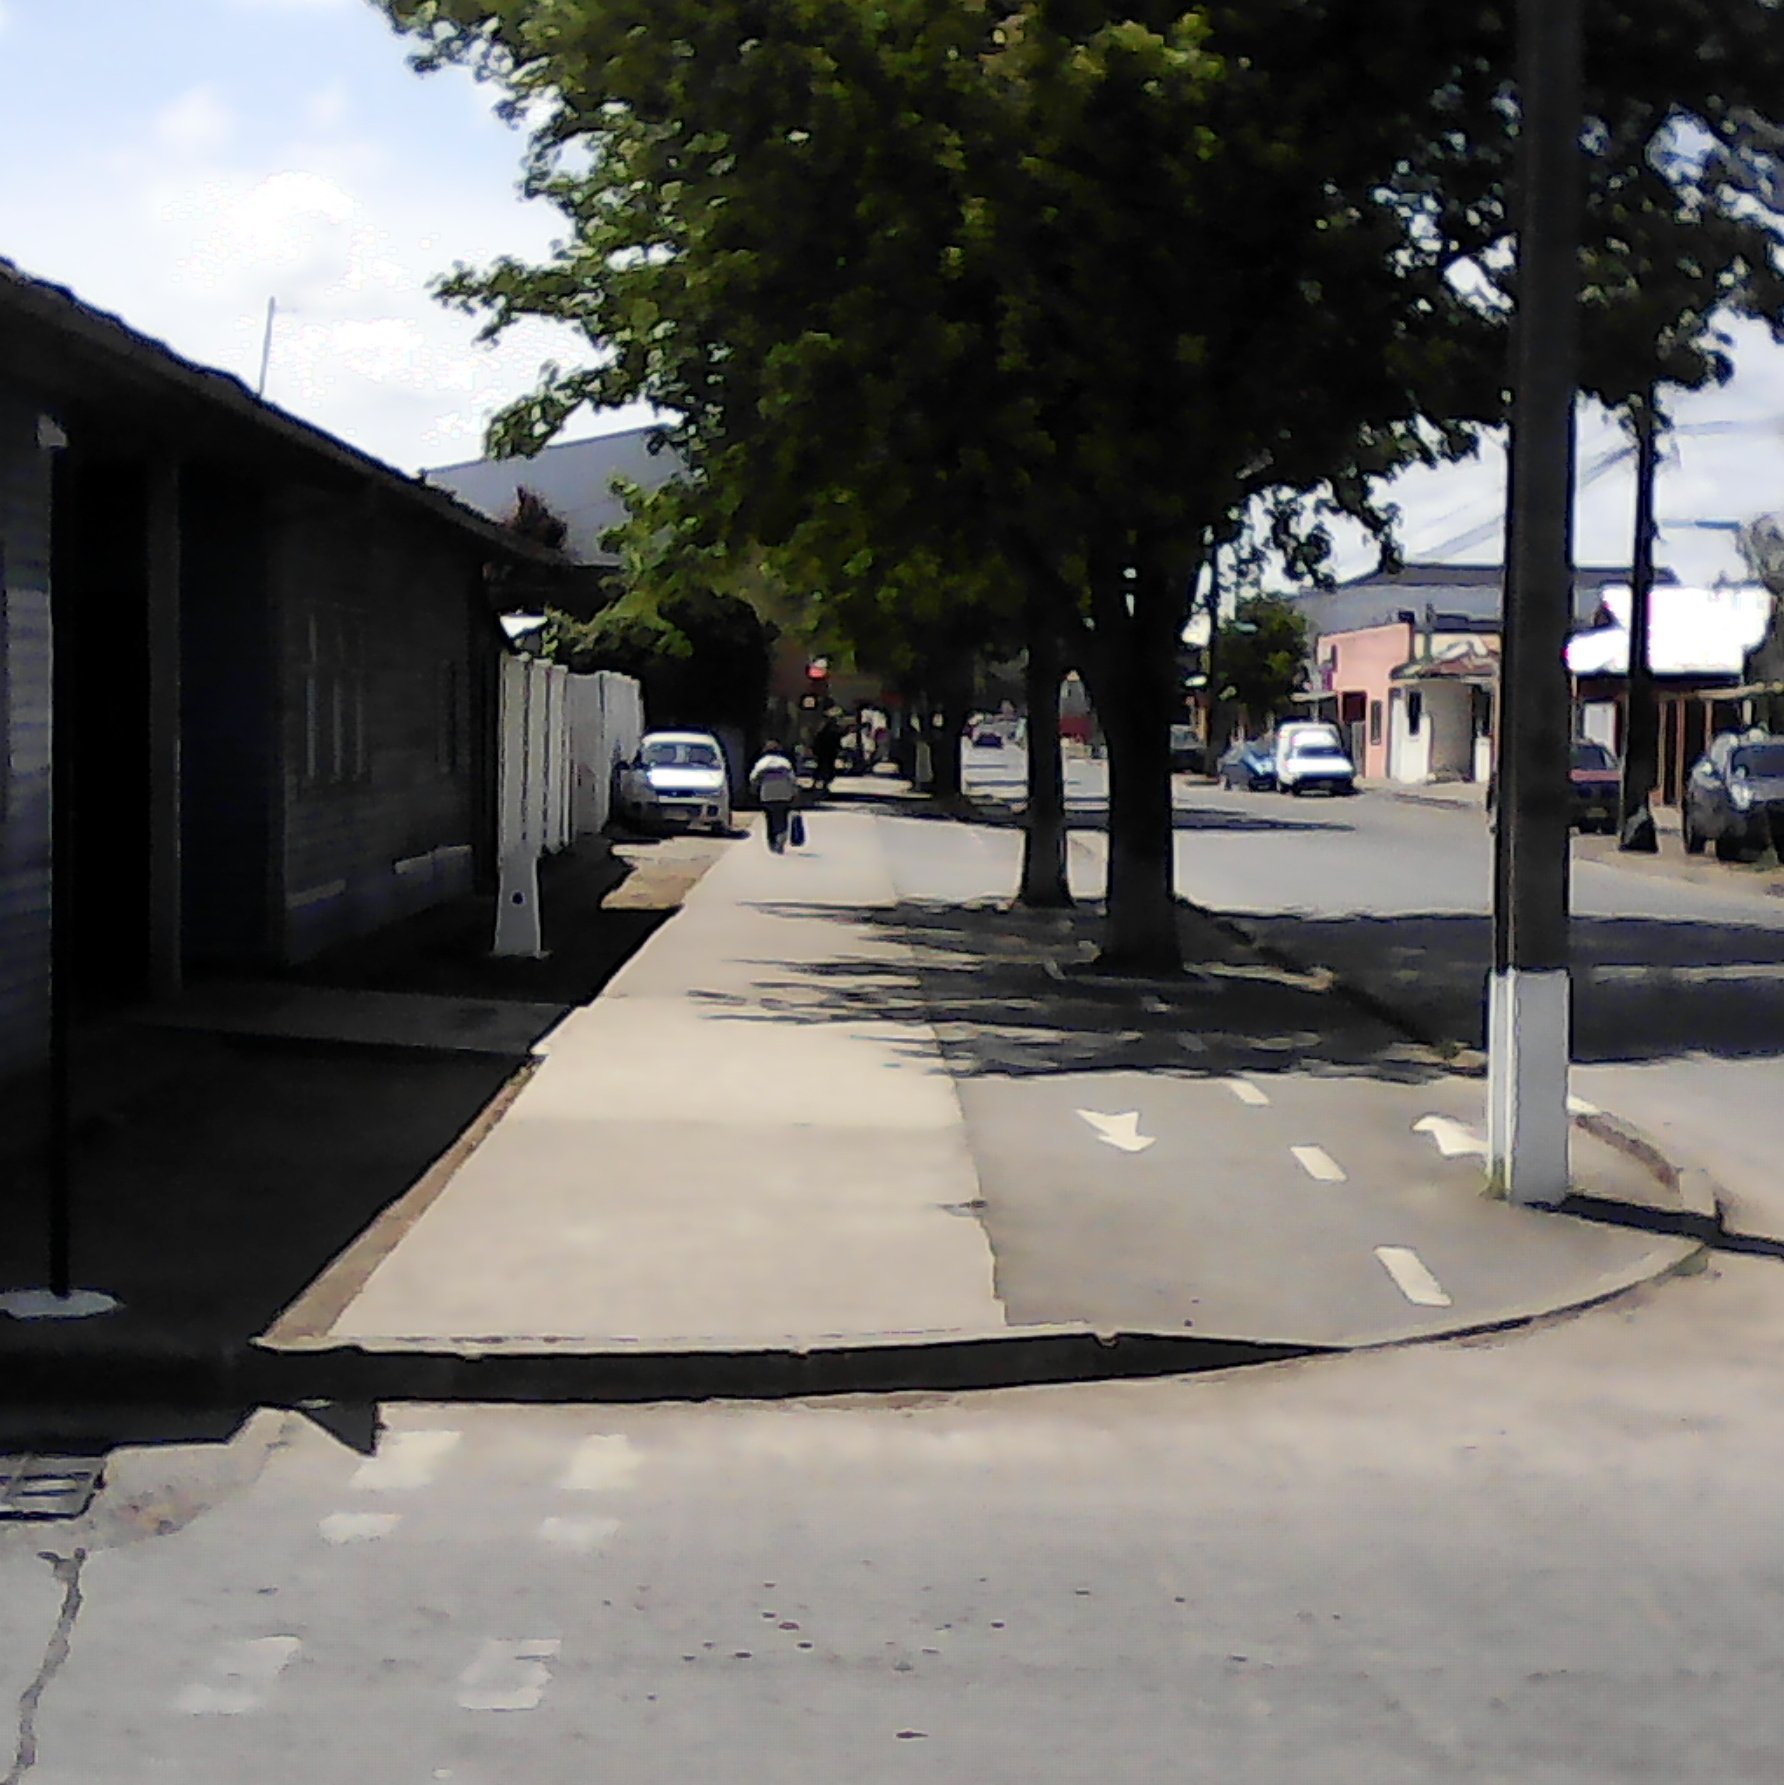 Comuna de San Carlos, se muestra ciclovía diferenciada, sin embargo la vereda carece de cruce peatonal rebajado